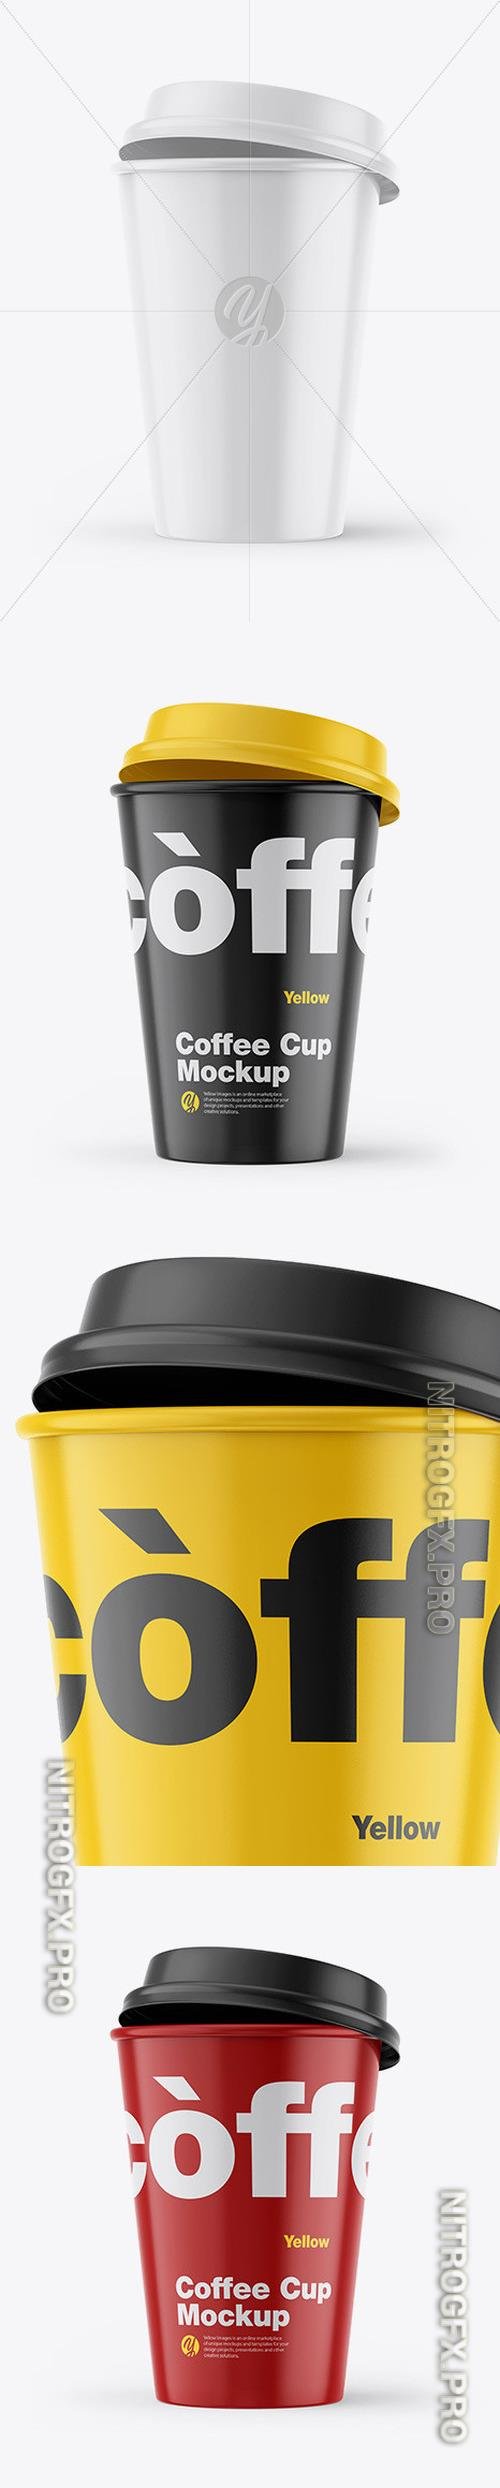 Glossy Coffee Cup Mockup - 46293